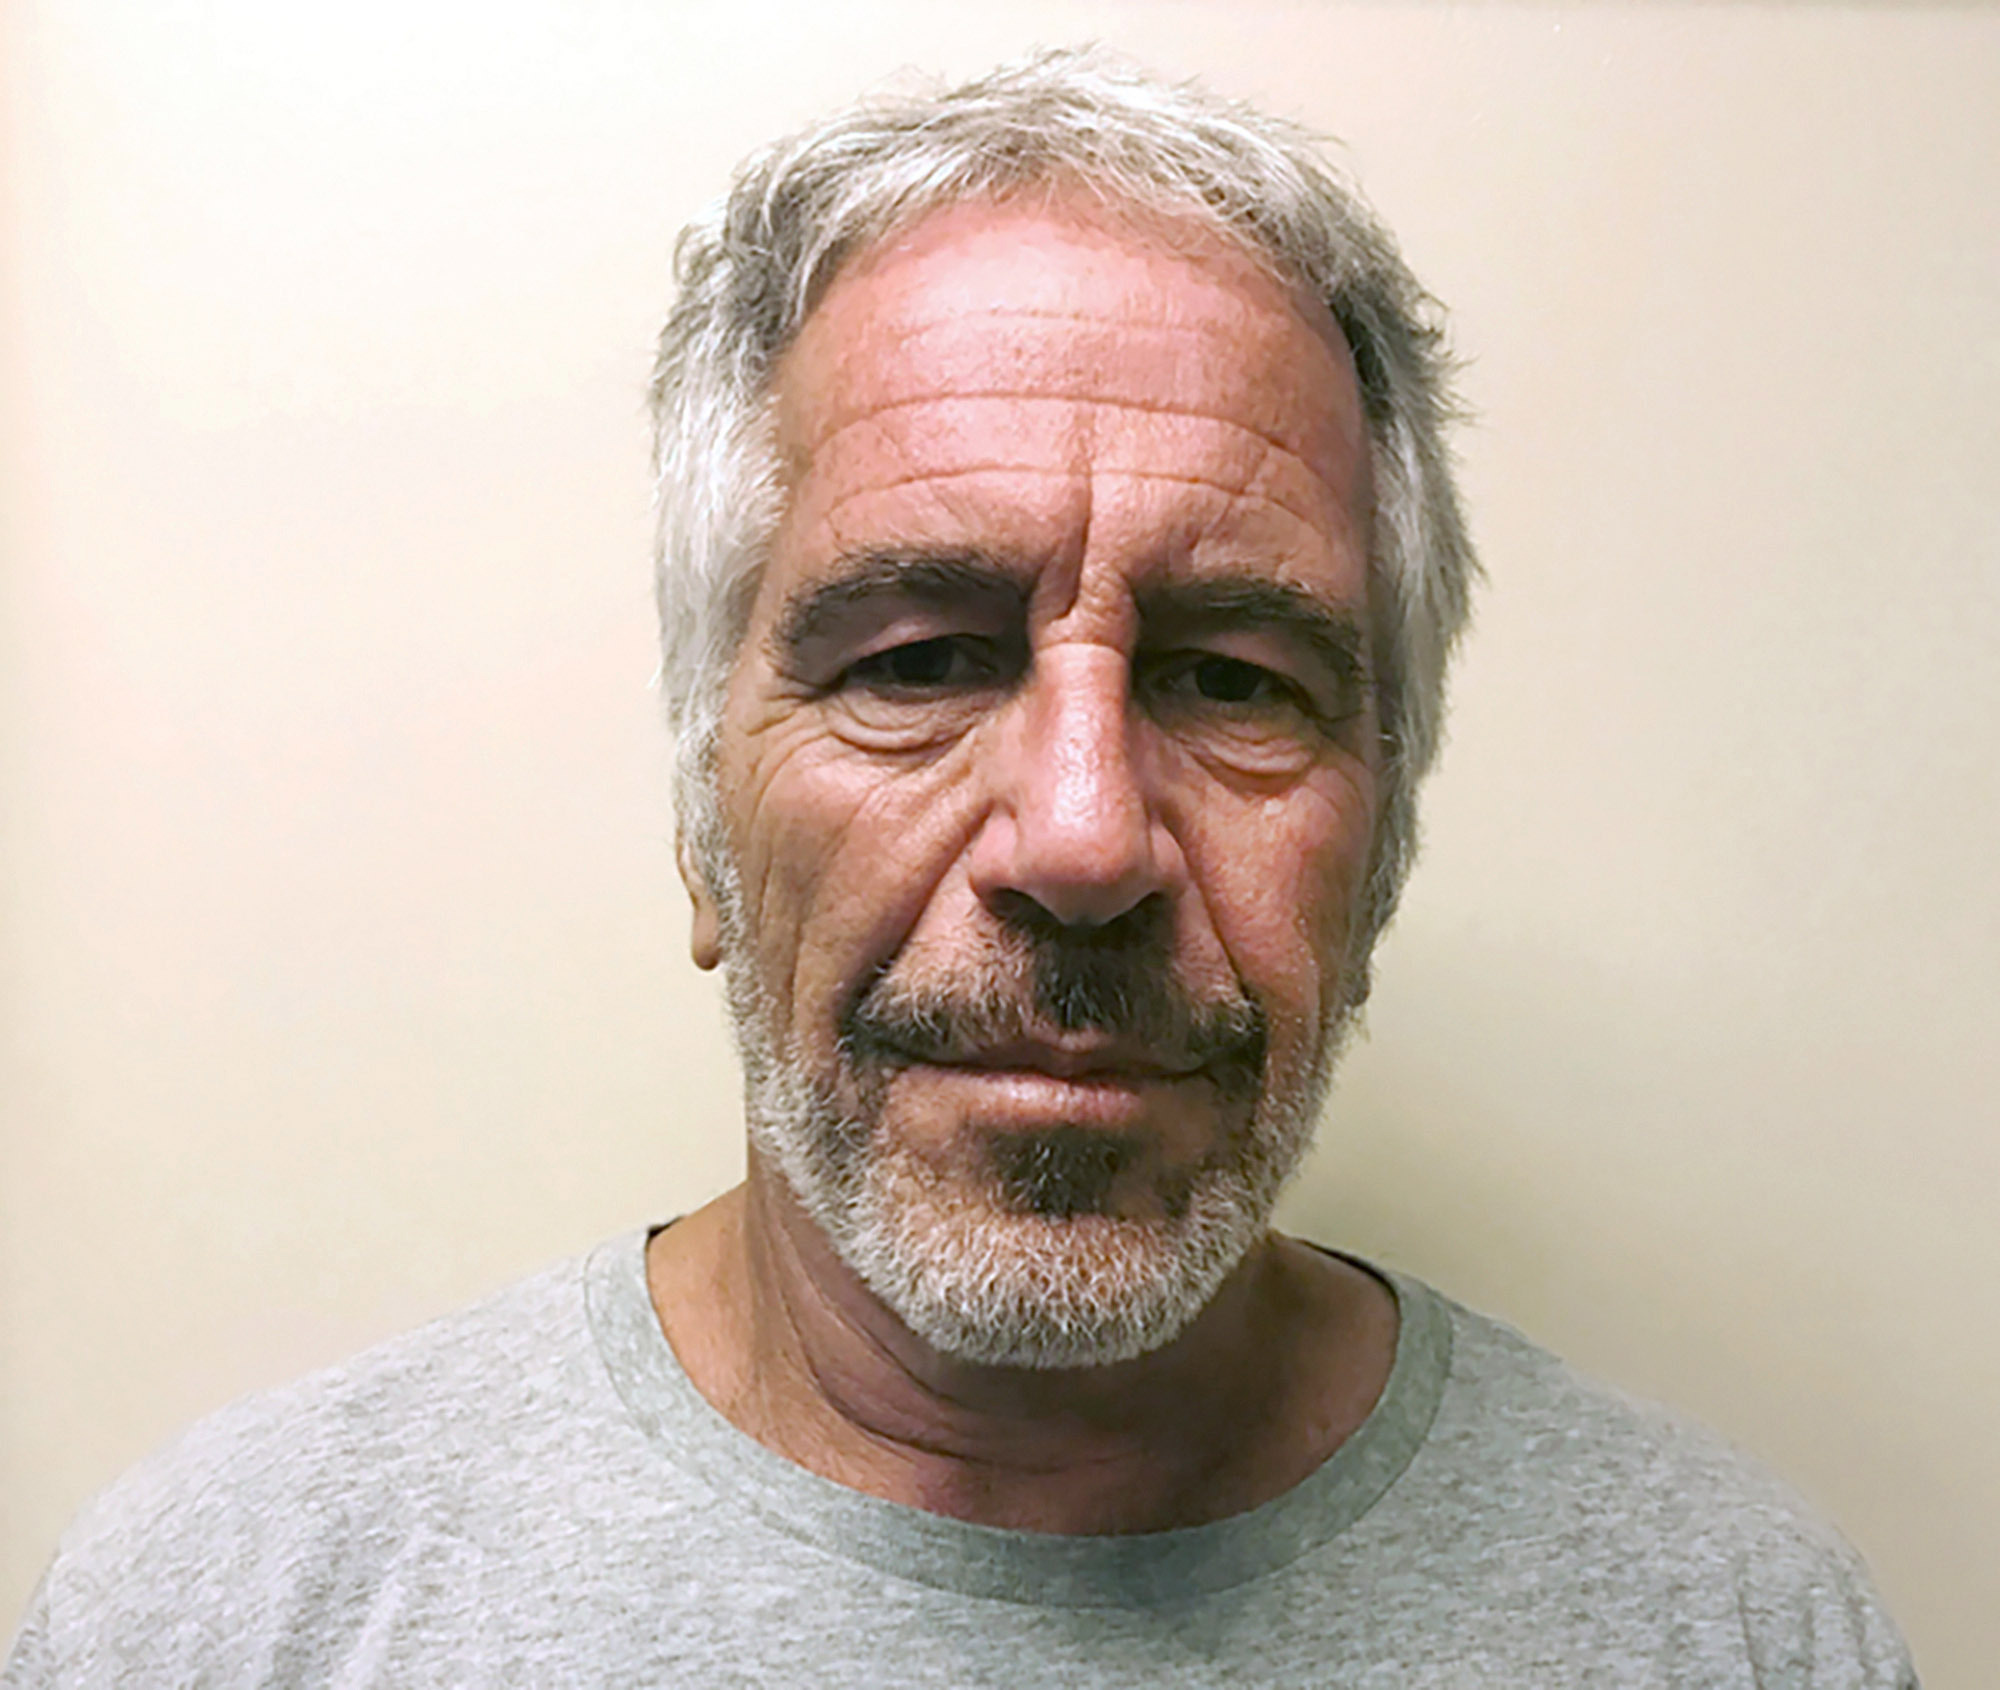 Lo scandalo Epstein scuote l'America